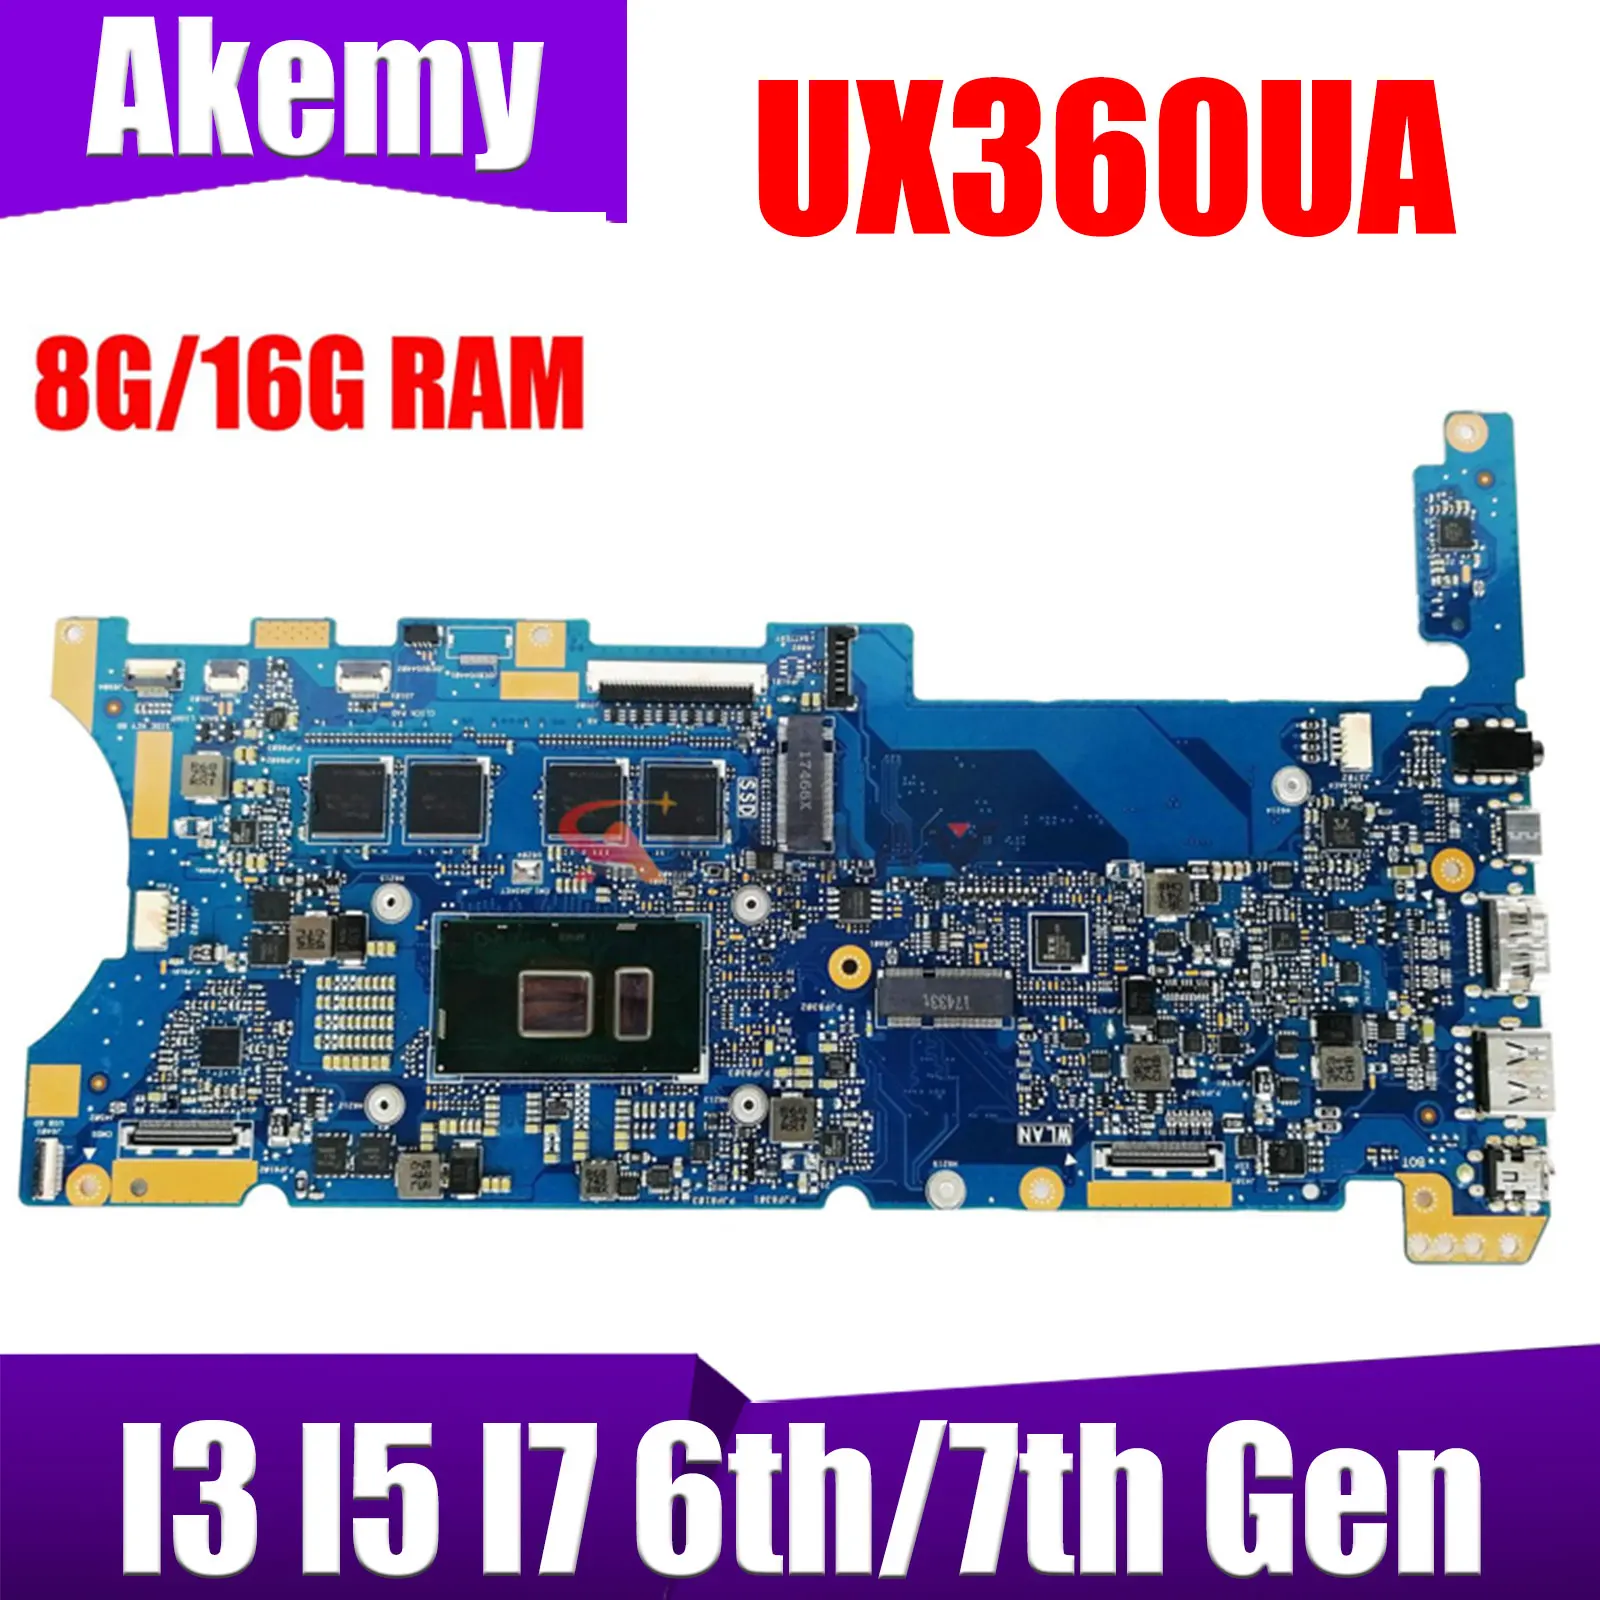 

UX360UA Материнская плата ASUS ZenBook Flip UX360UAK UX360U UX360 TP360UA материнская плата для ноутбука I3 I5 I7 6th/7th Gen 8GB/16GB-RAM